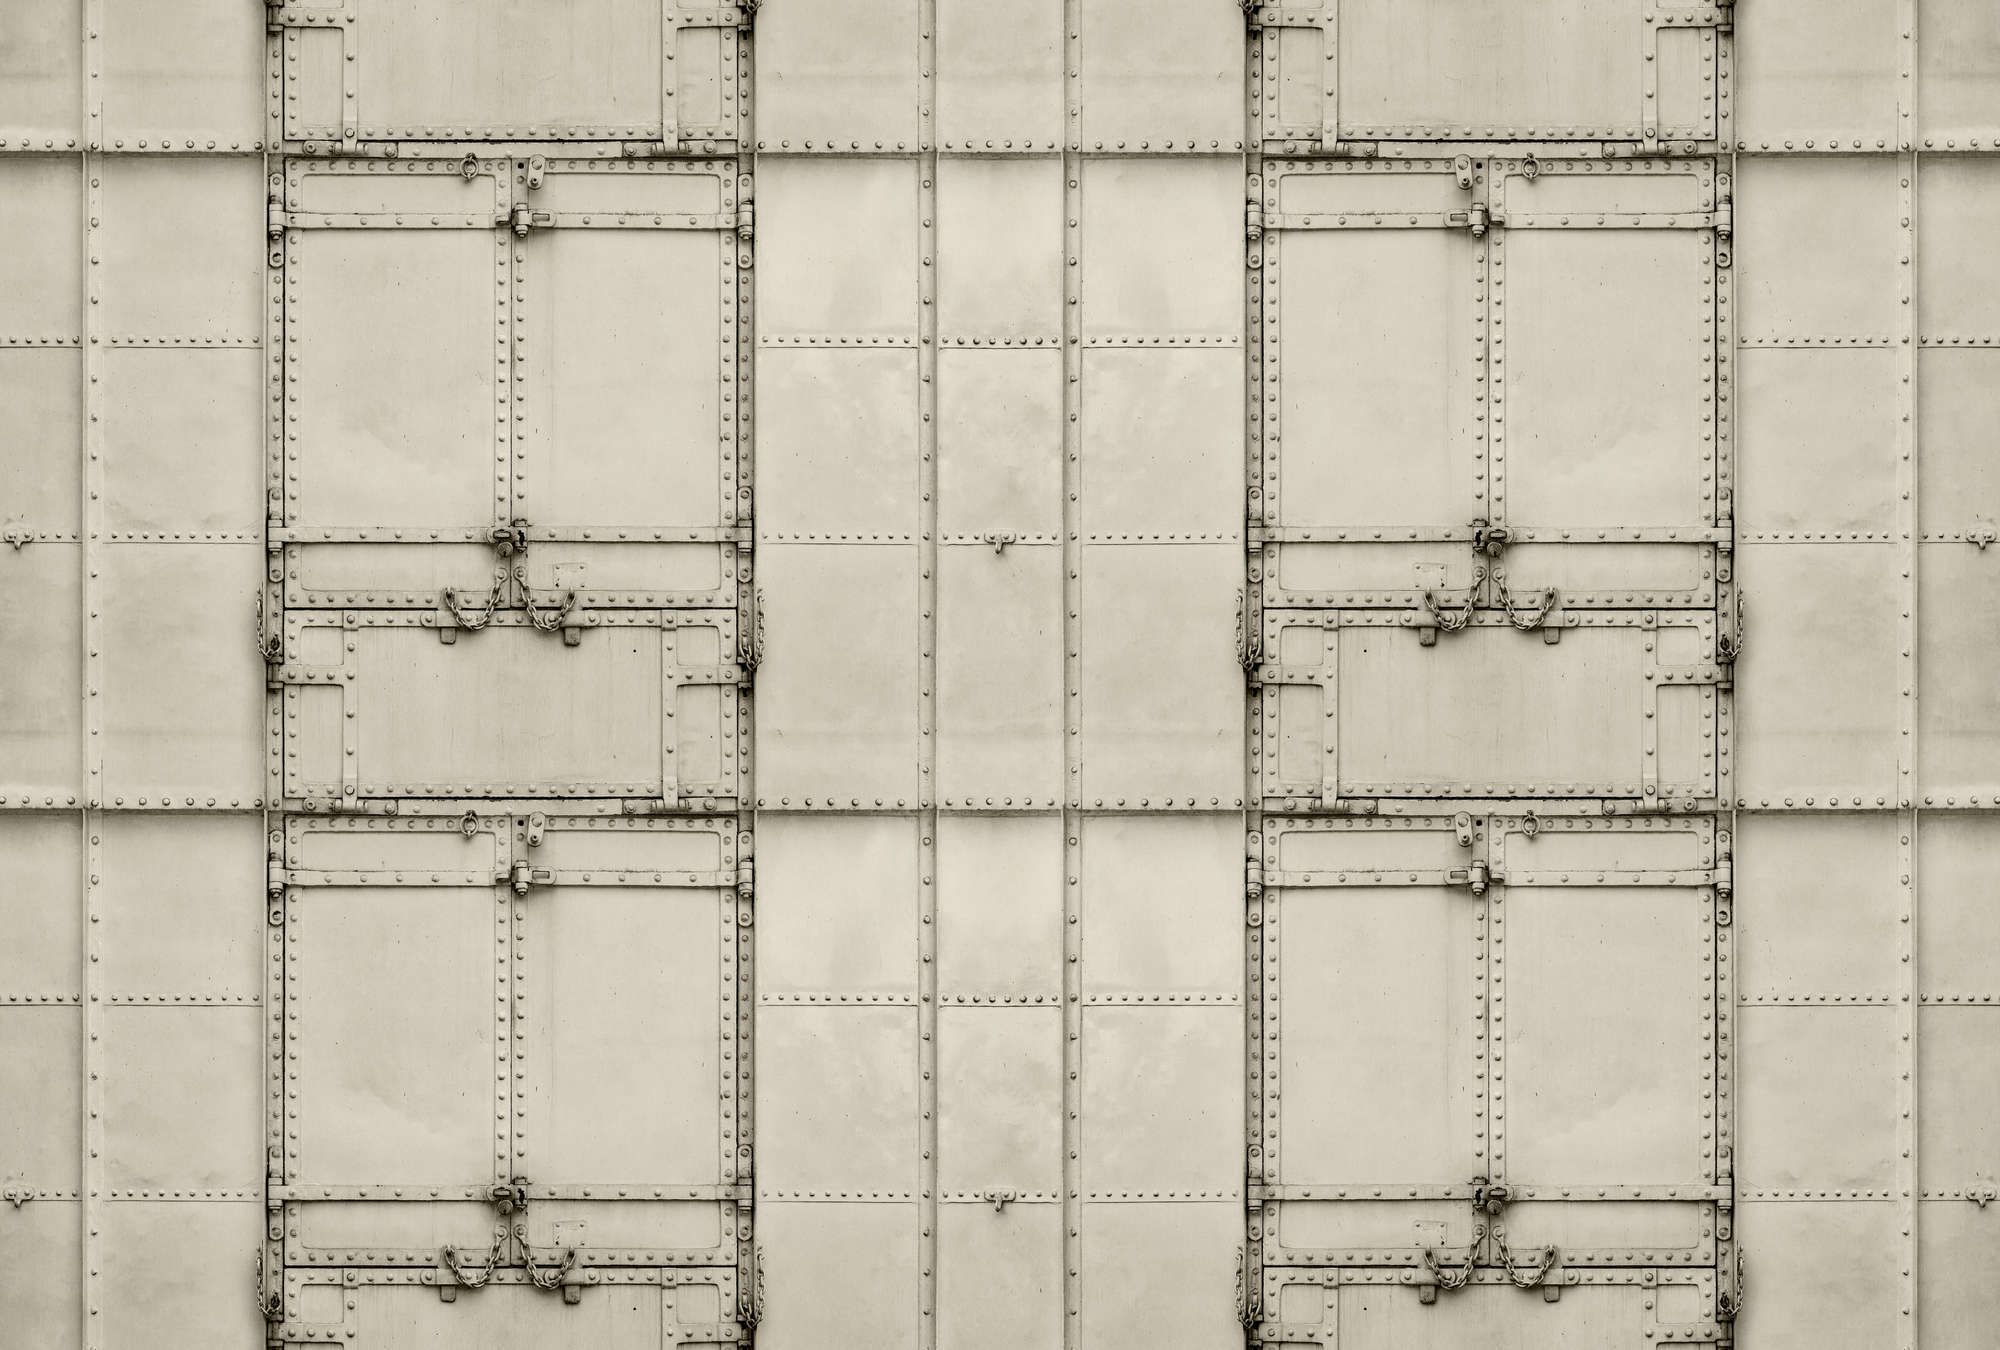             Fotomural »madurai« - Diseño patchwork con placas de metal con remaches y cadenas - Tela no tejida lisa y mate
        